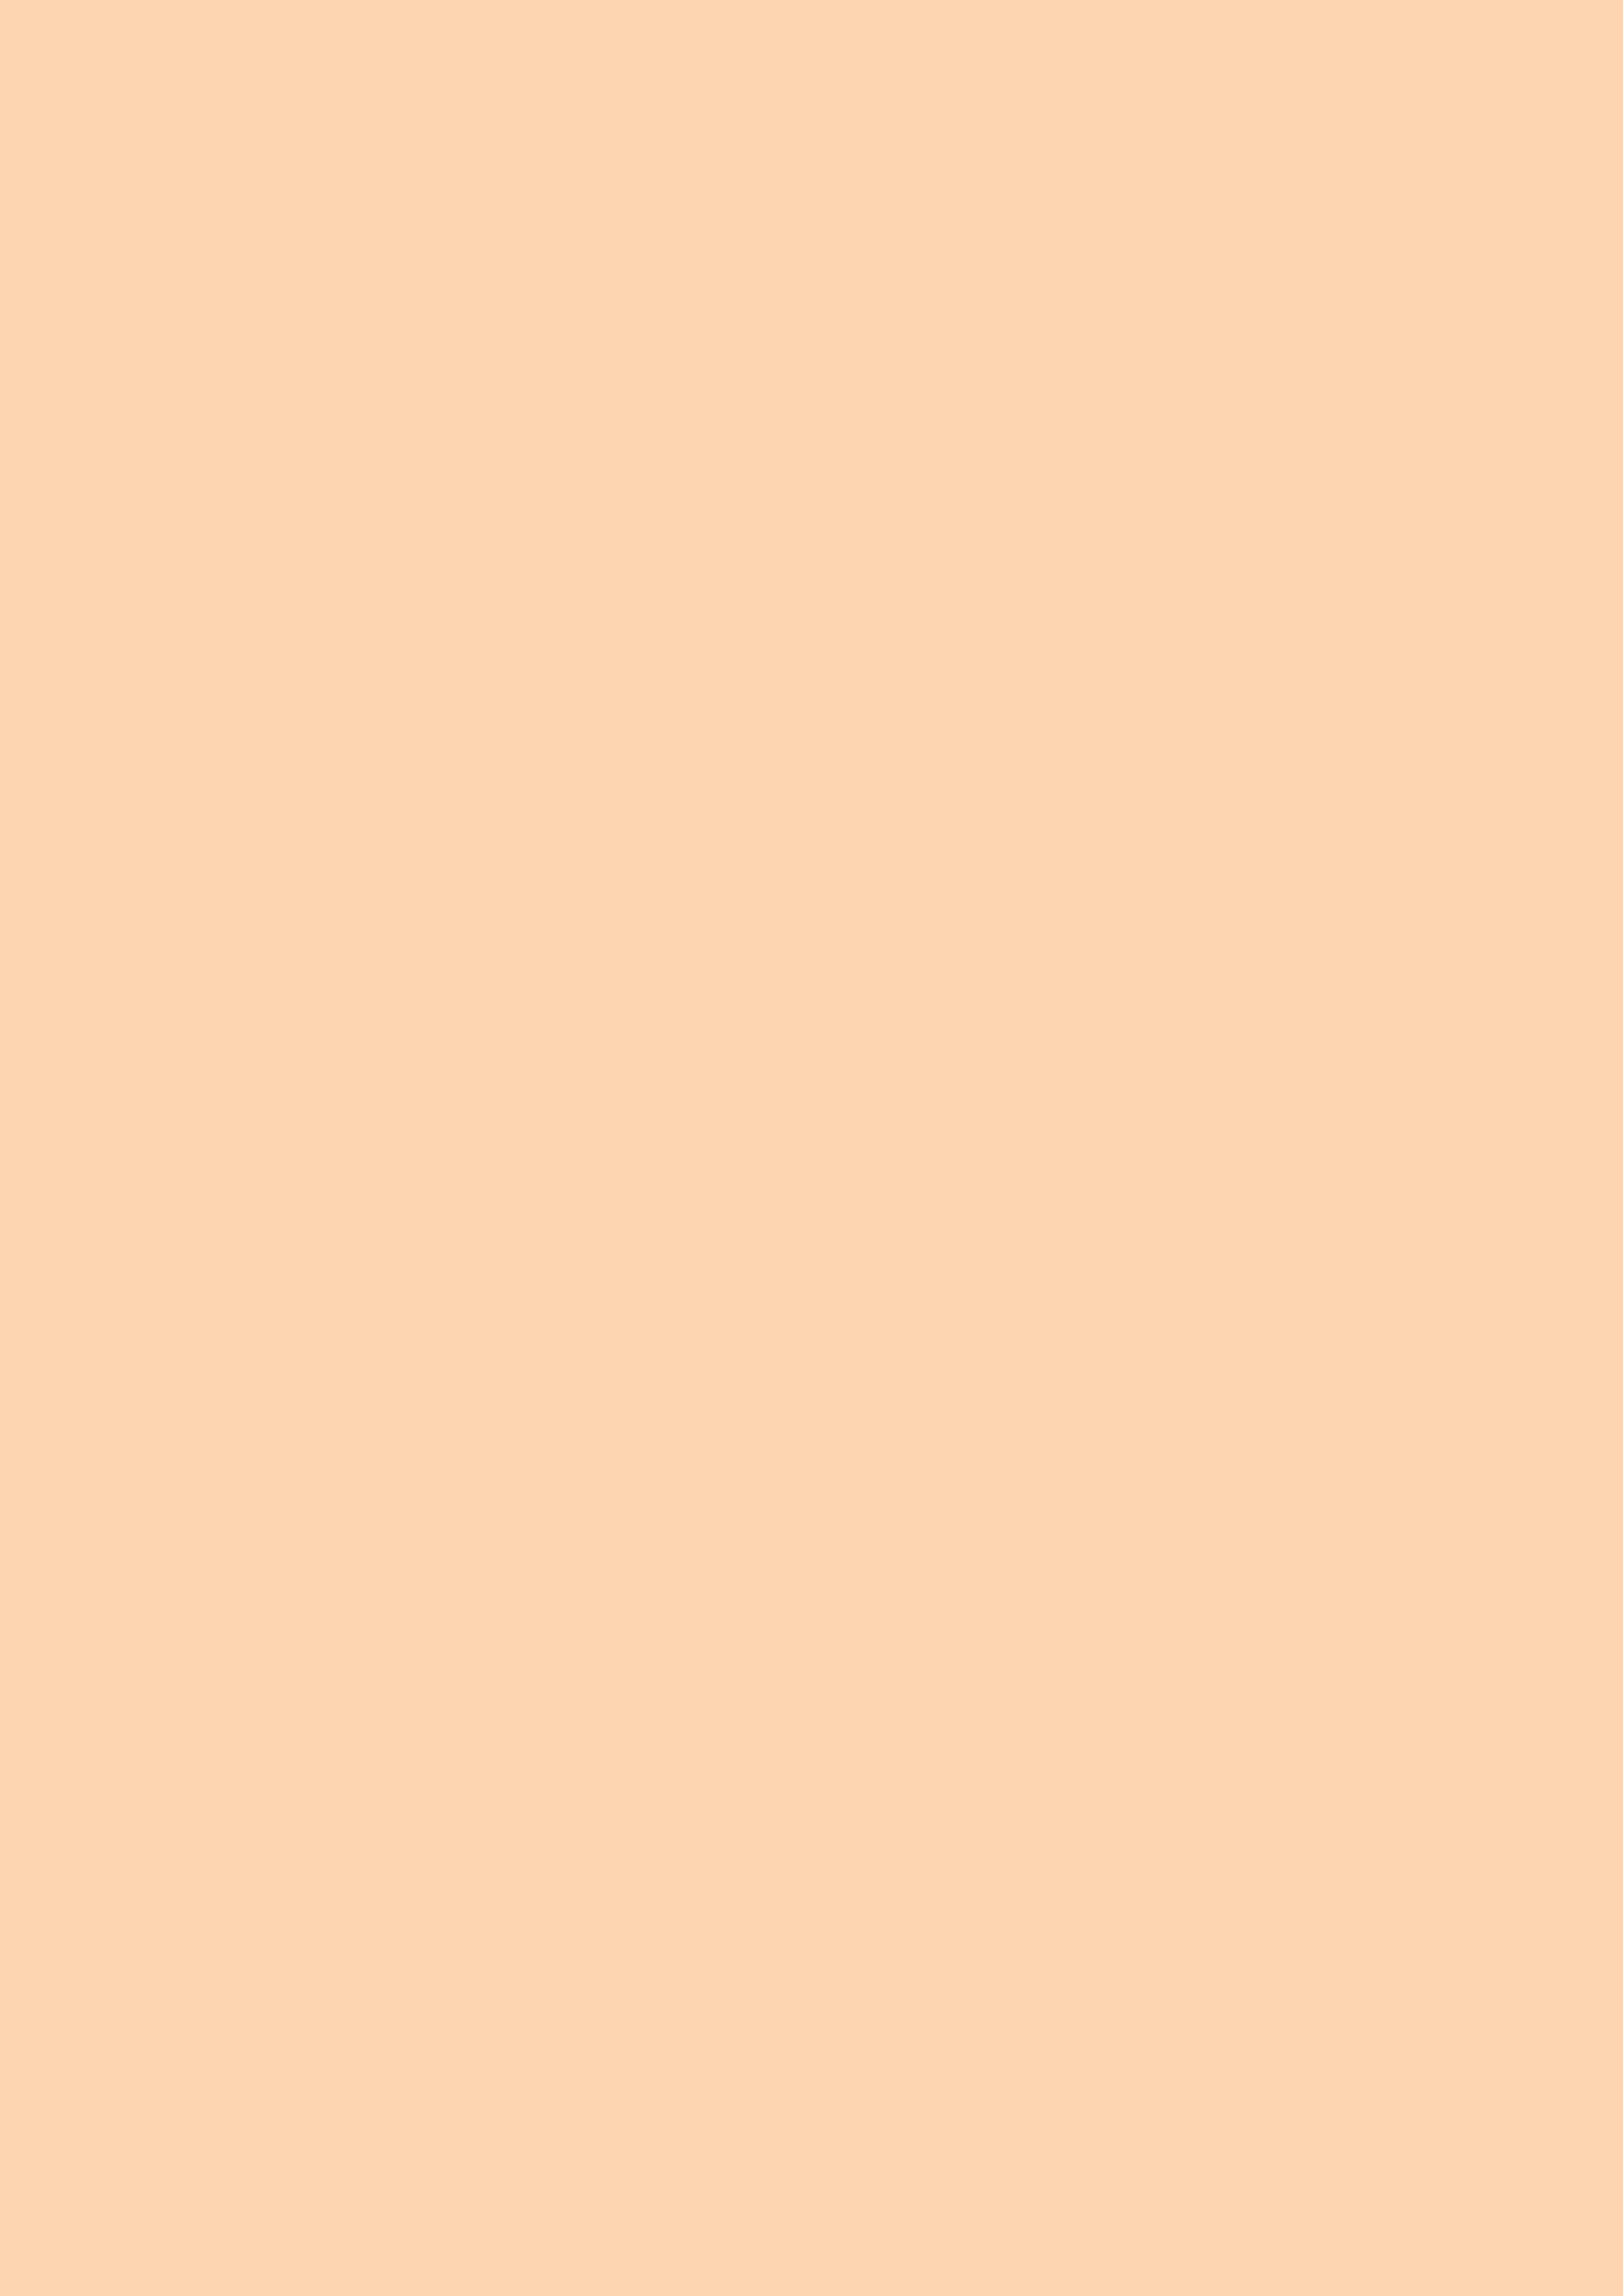 2480x3508 Feldspar Solid Color Background